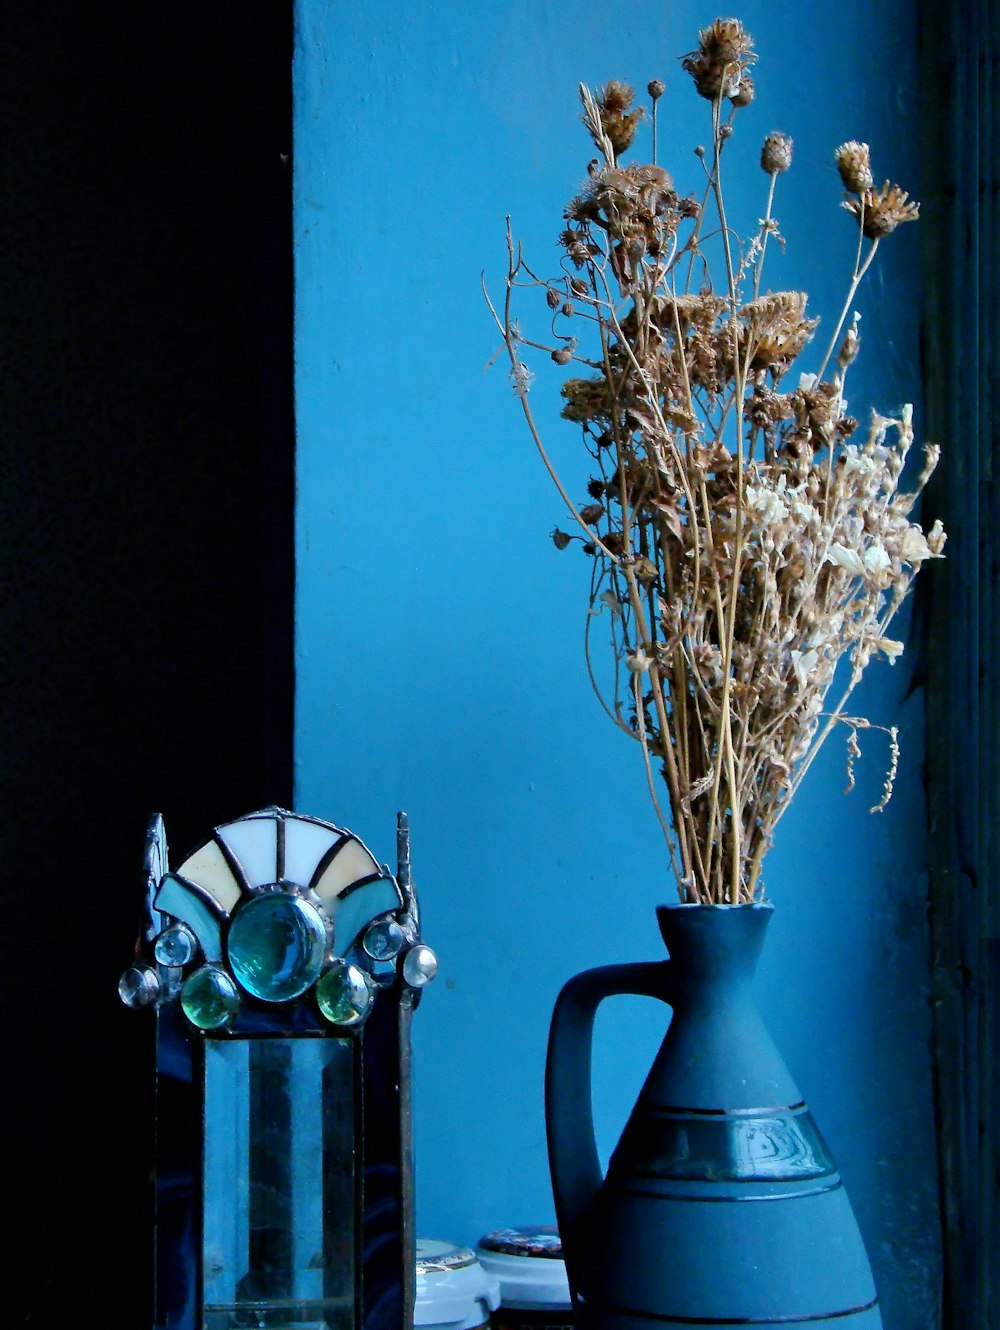 white and green flower in blue ceramic vase